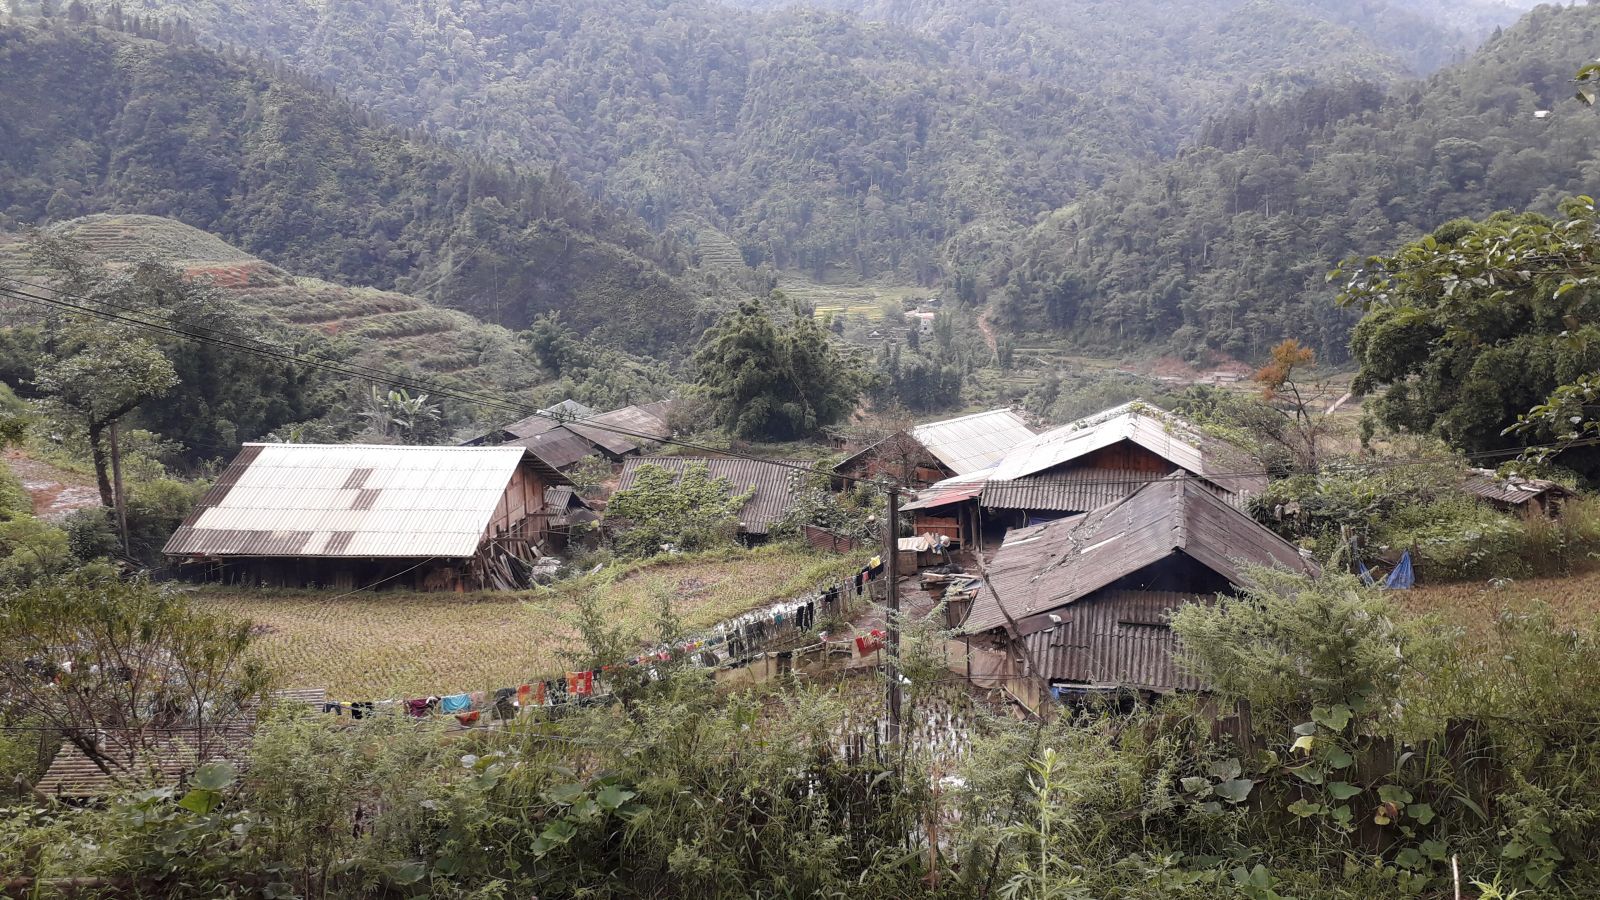 Ban Khoang village